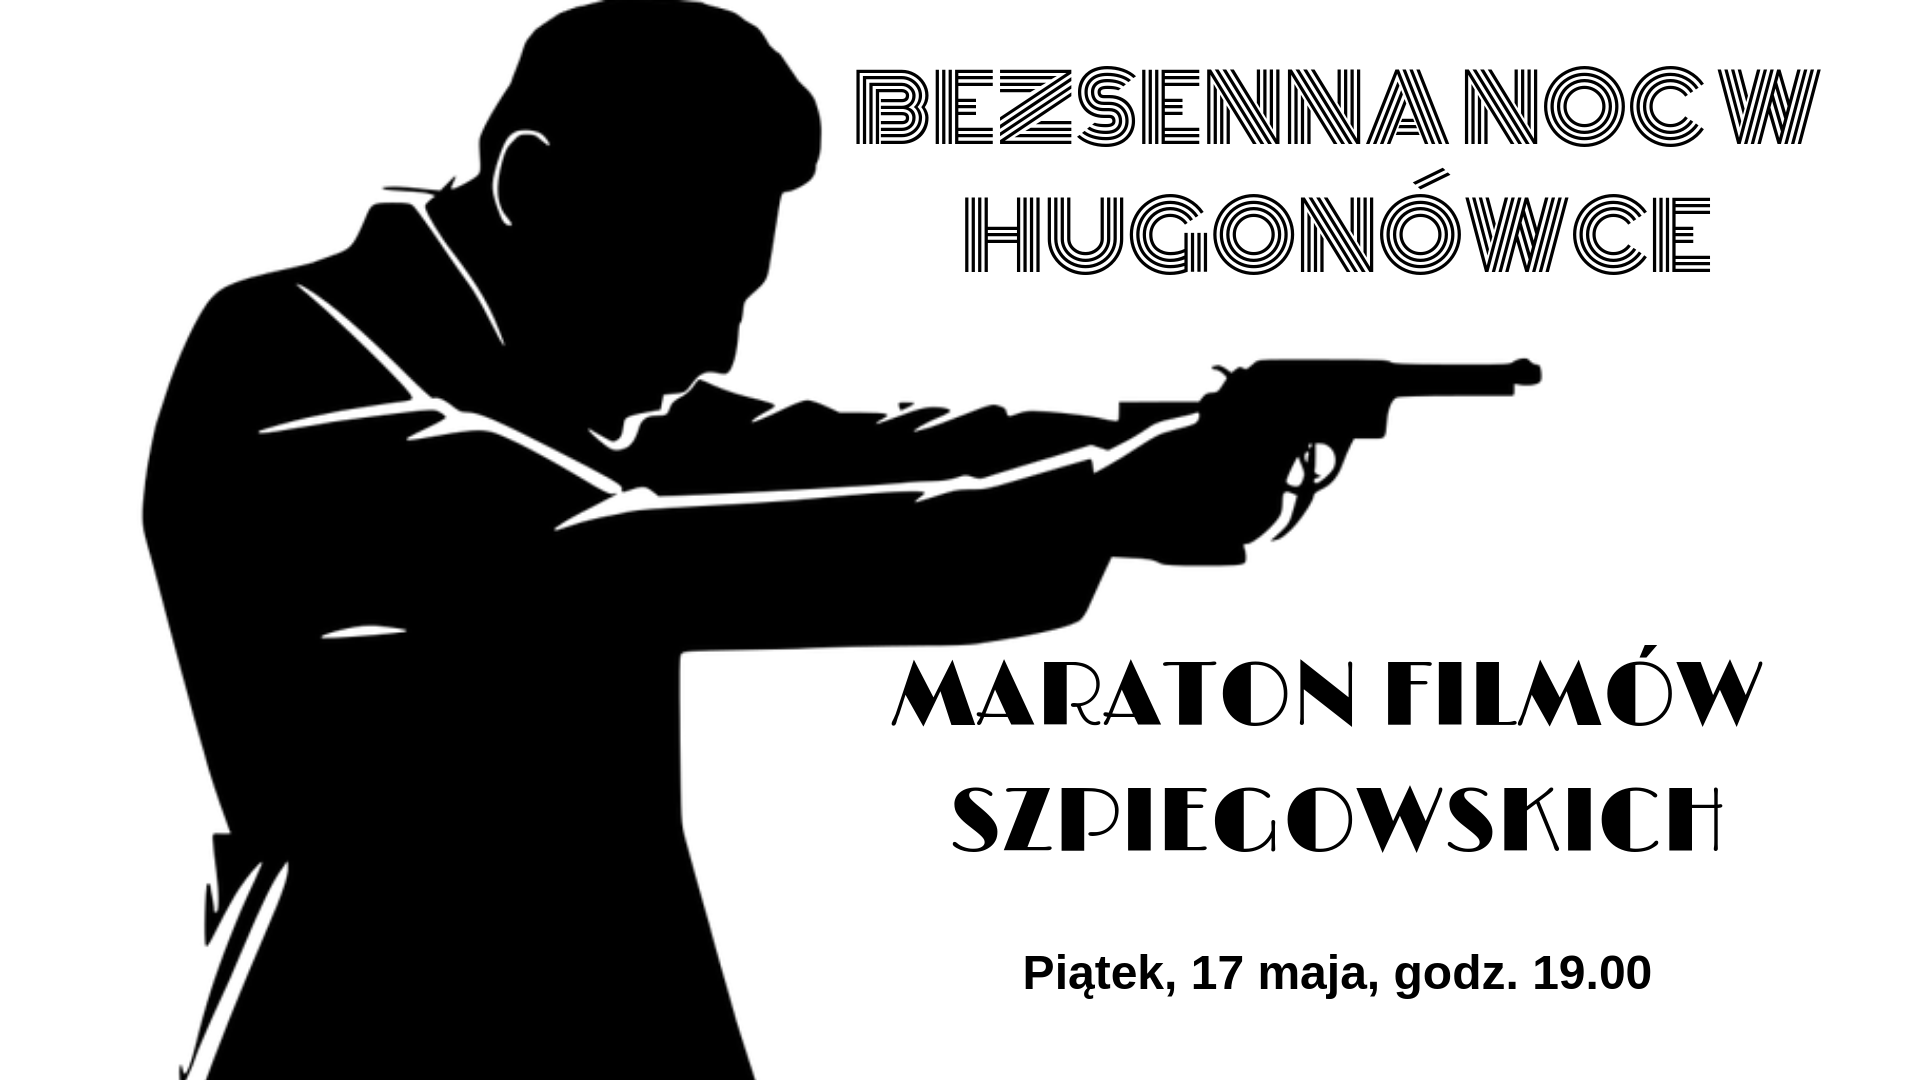 Maraton filmów szpiegowskich - BEZSENNA NOC W HUGONÓWCE